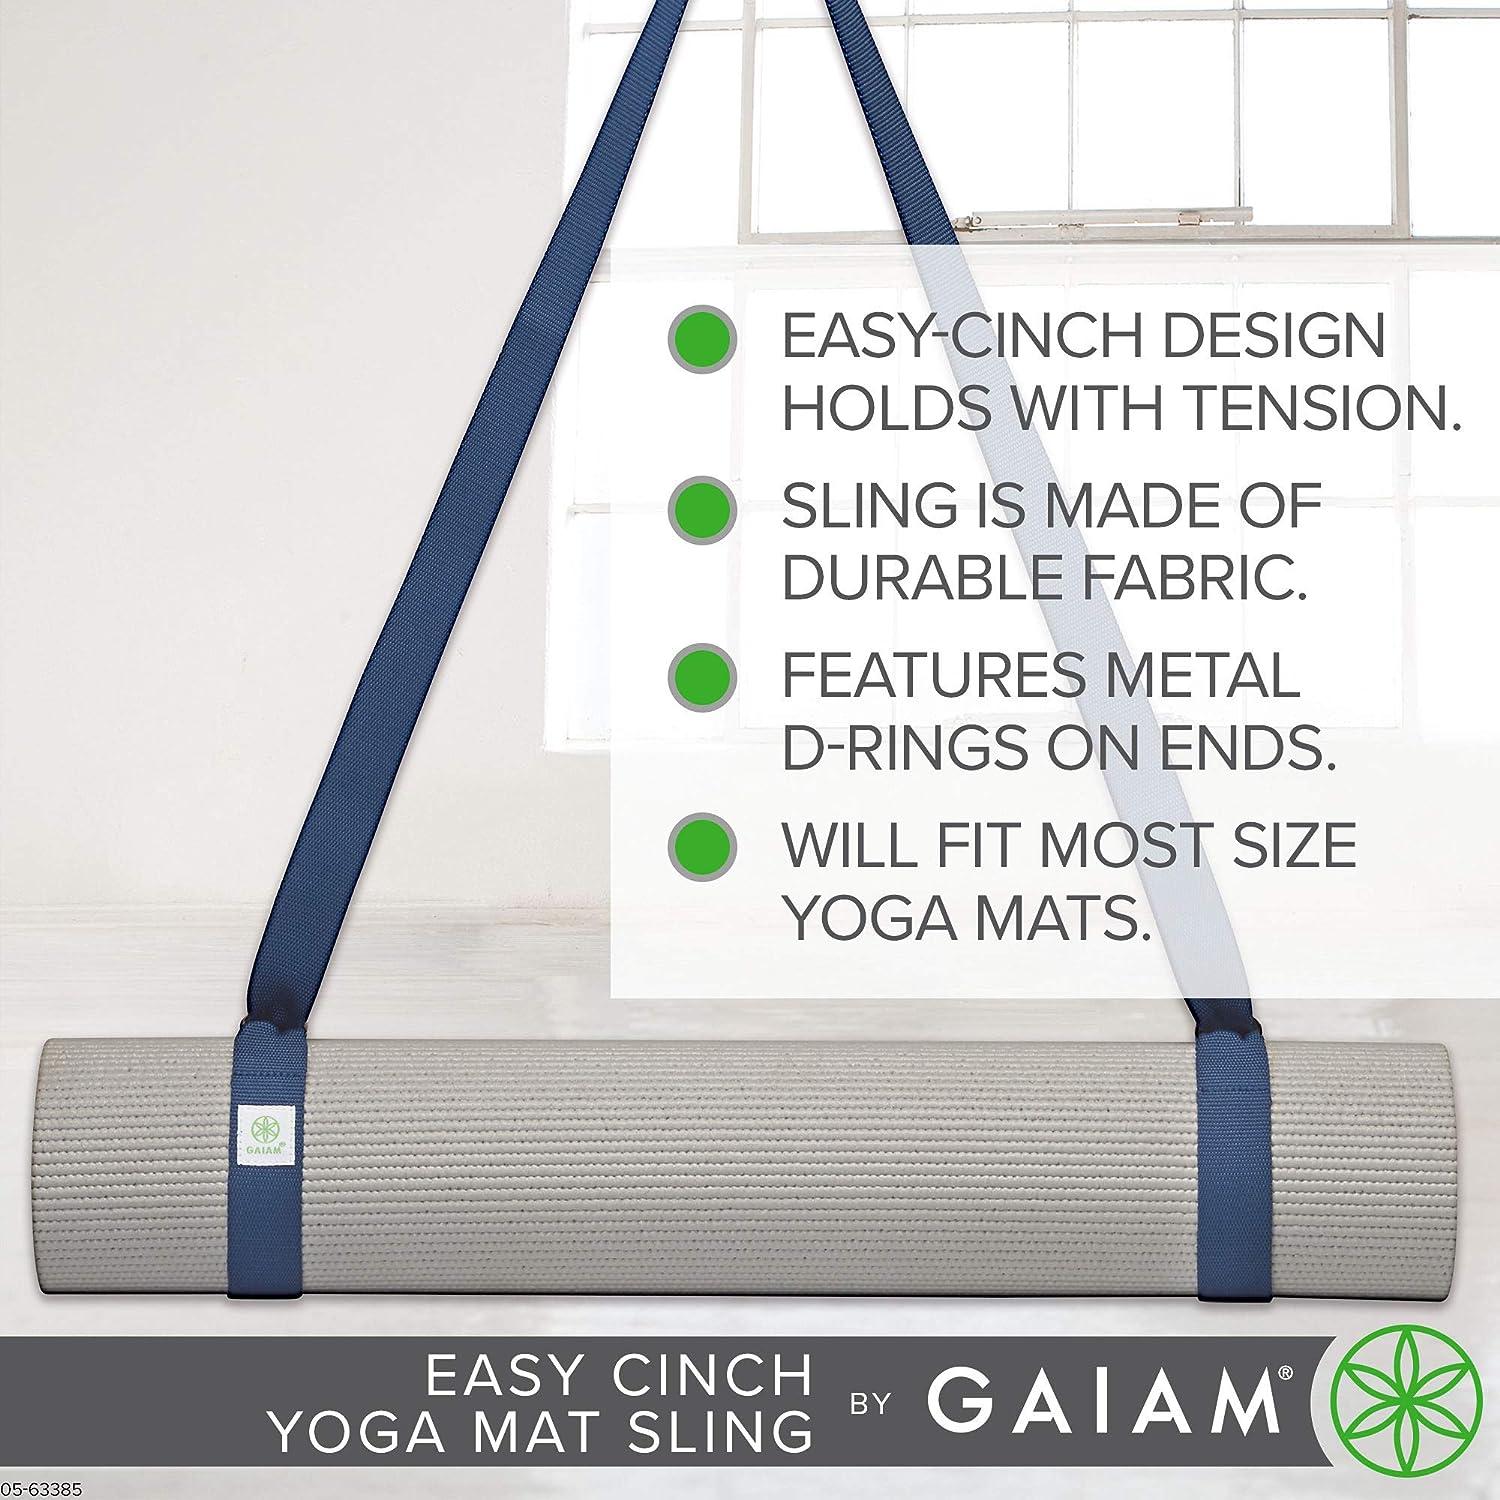 Gaiam Easy Cinch Yoga Sling at